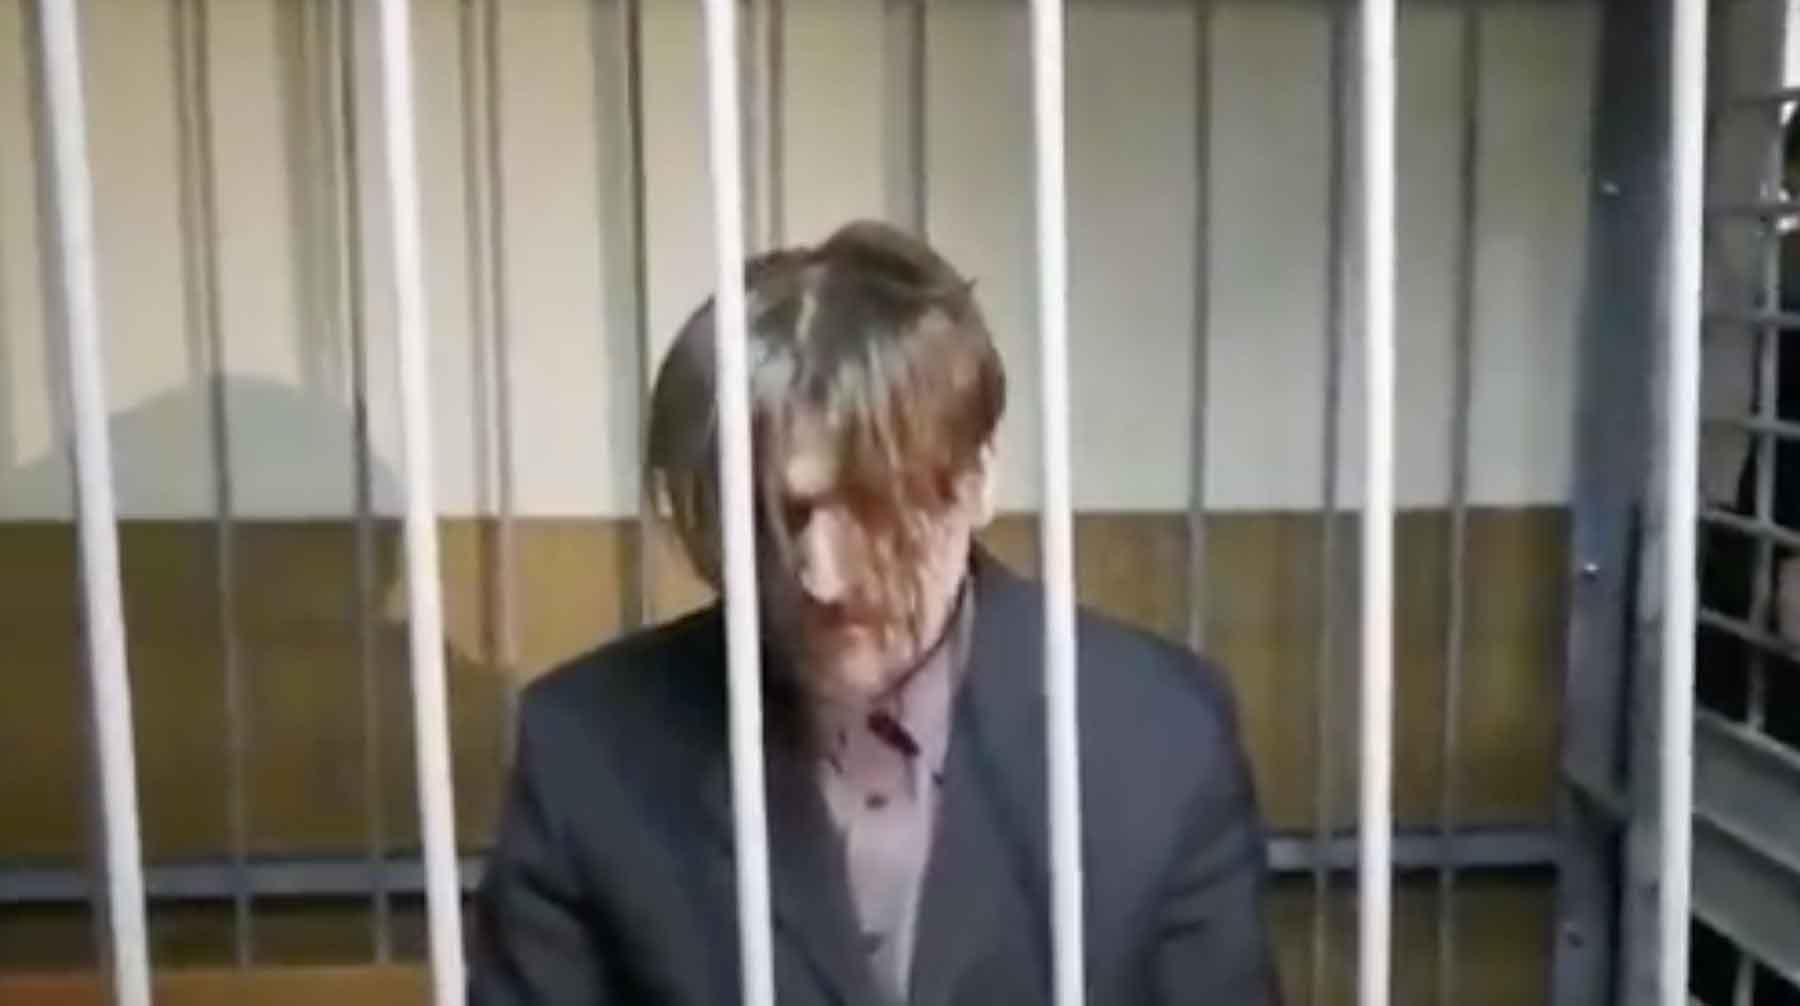 Dailystorm - Арестованный мучитель из Химози потребовал в суде встречи с Путиным